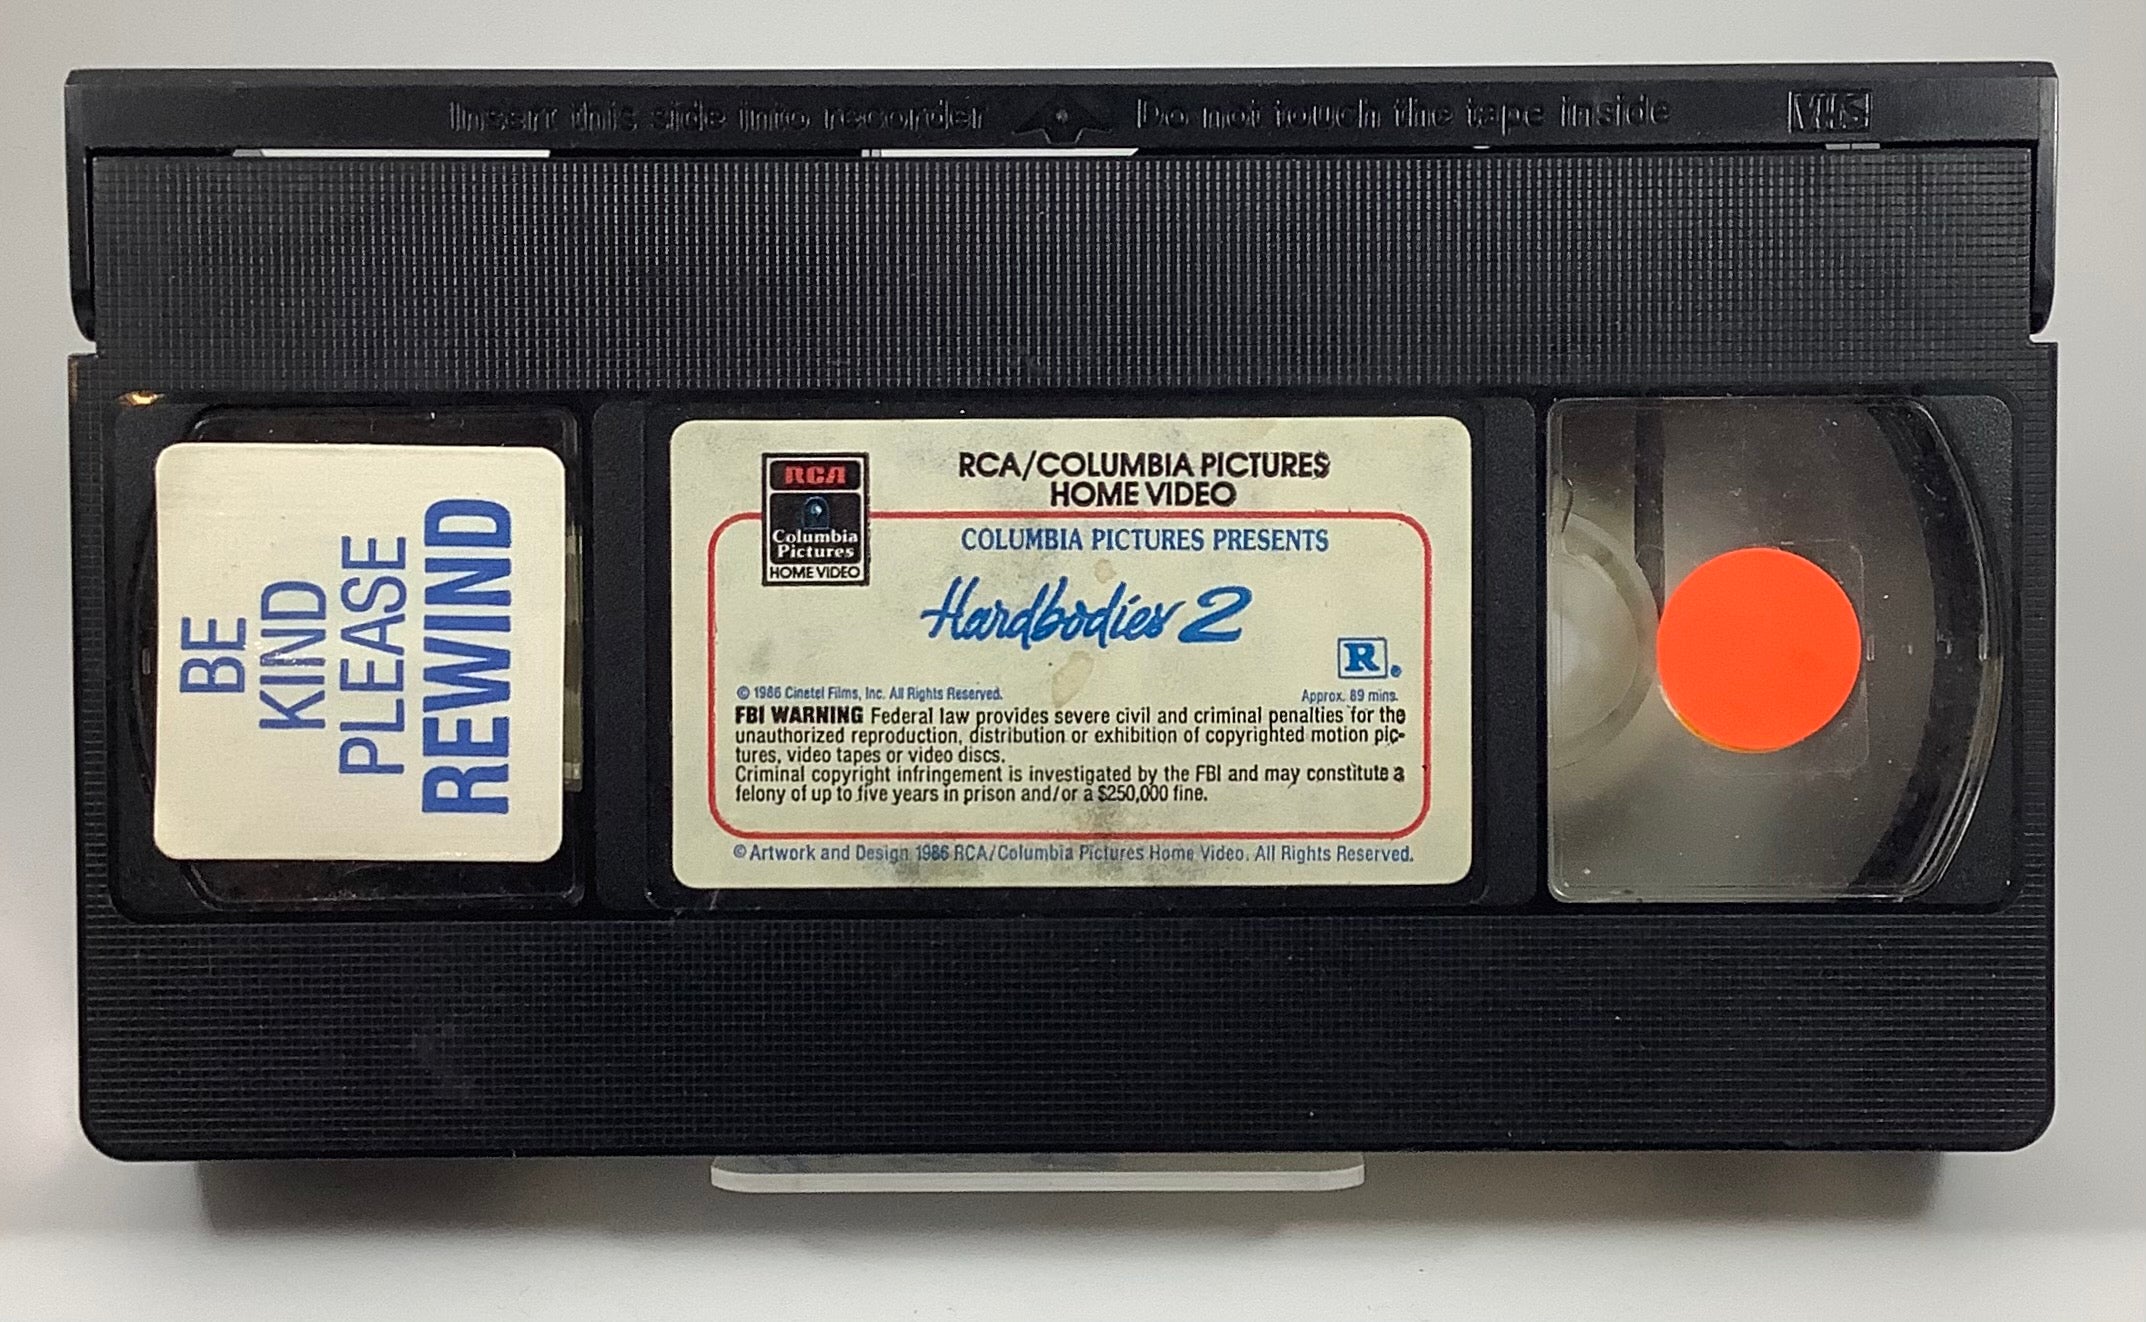 Hardbodies 2 VHS – Orbit DVD